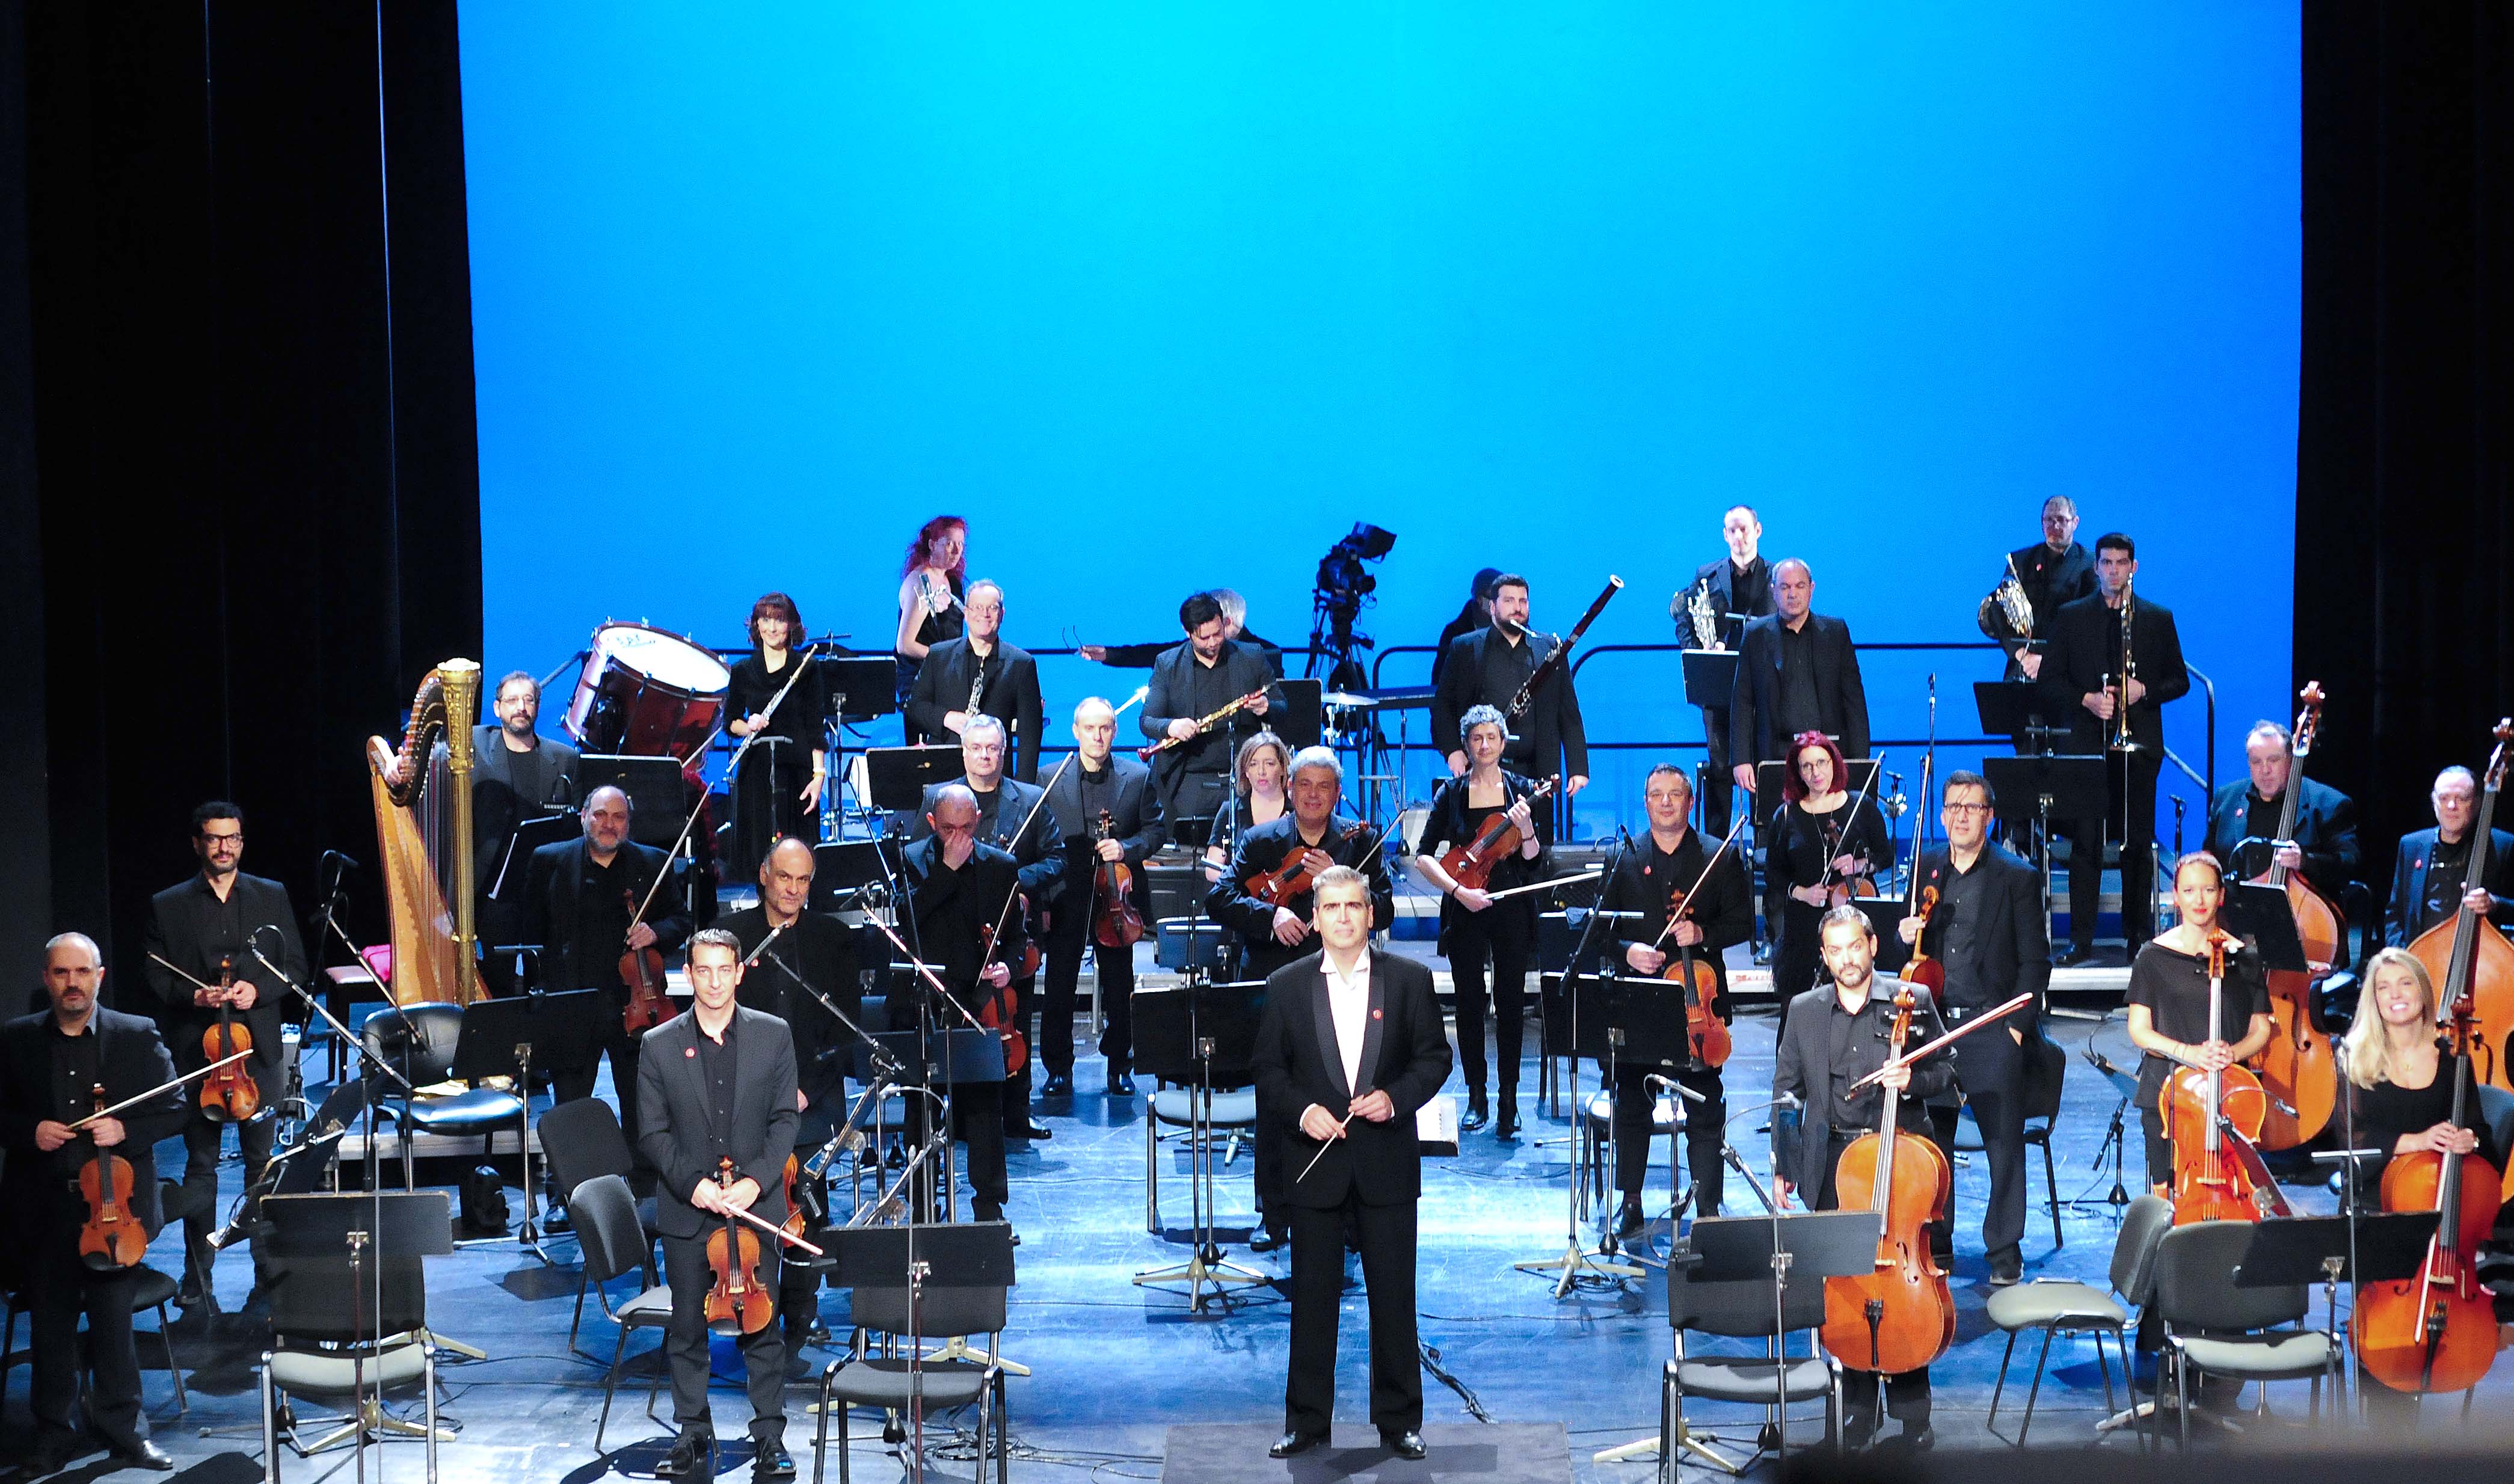 ΕΡΤ2: «Συμφωνικό ρεμπέτικο - Από τη Σμύρνη και την Πόλη στον Πειραιά» - Συναυλία με την Ορχήστρα Σύγχρονης Μουσικής της ΕΡΤ